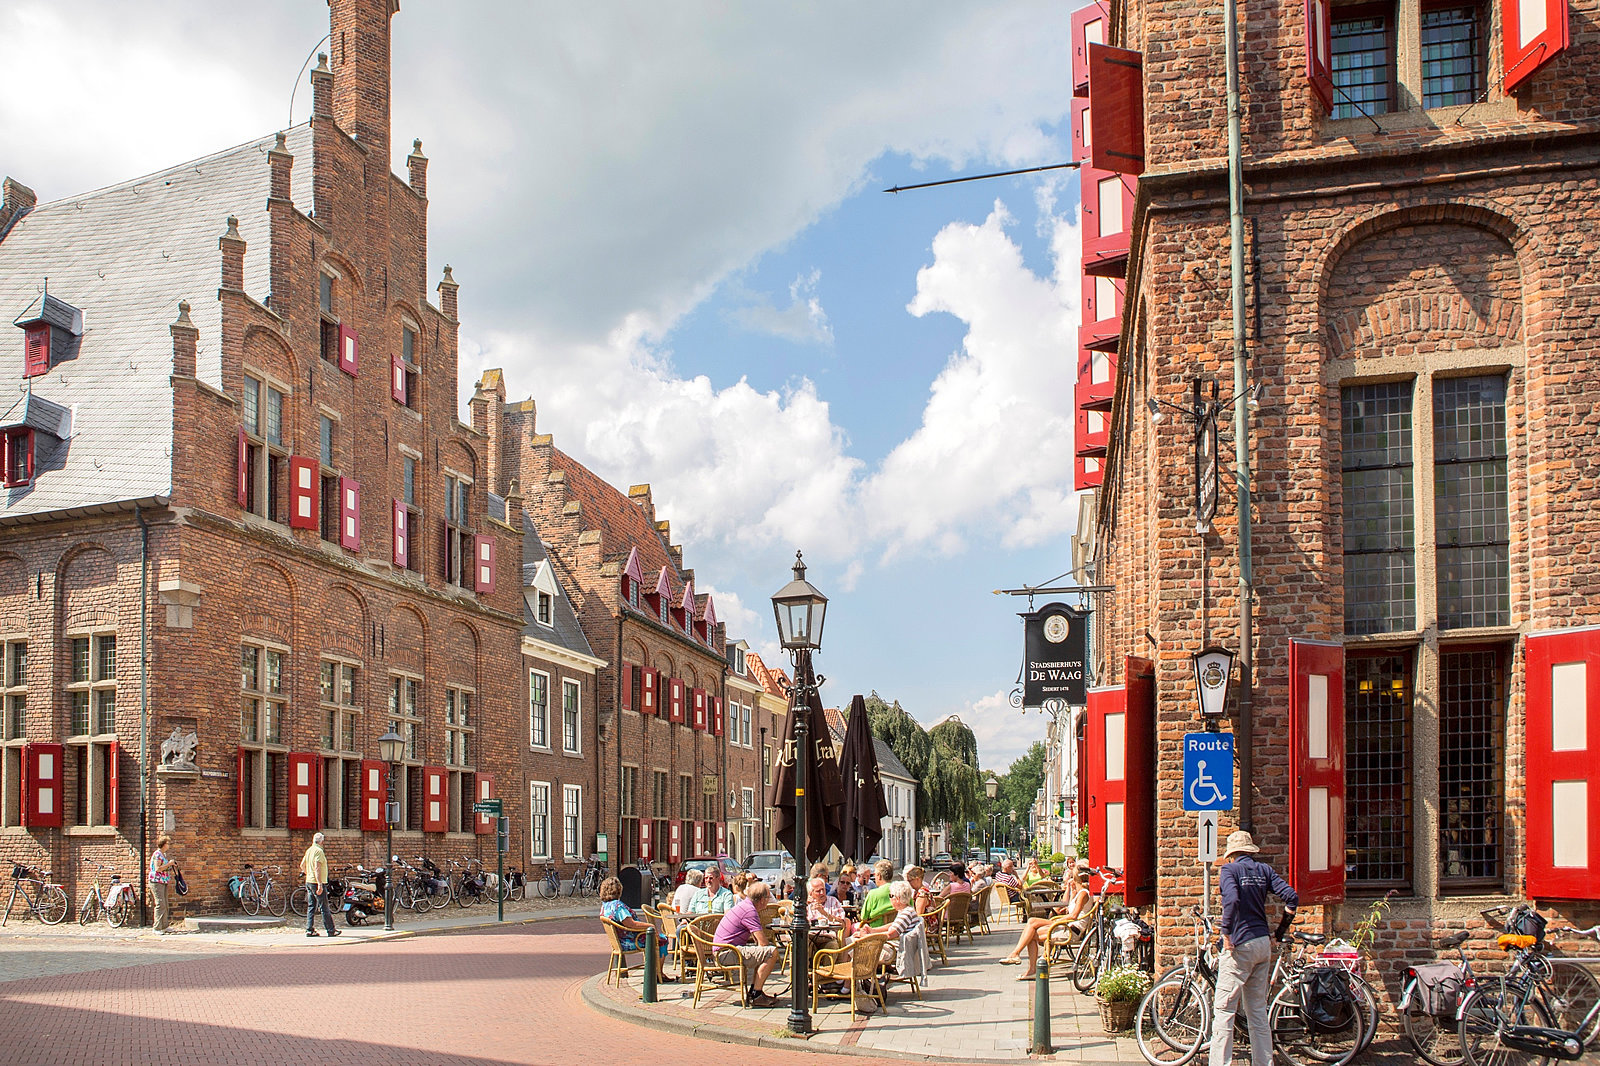 Straße mit alten Backsteinhäusern im holländischen Stil, Gastronomie mit Außentischen und vielen Gästen und Gästinnen